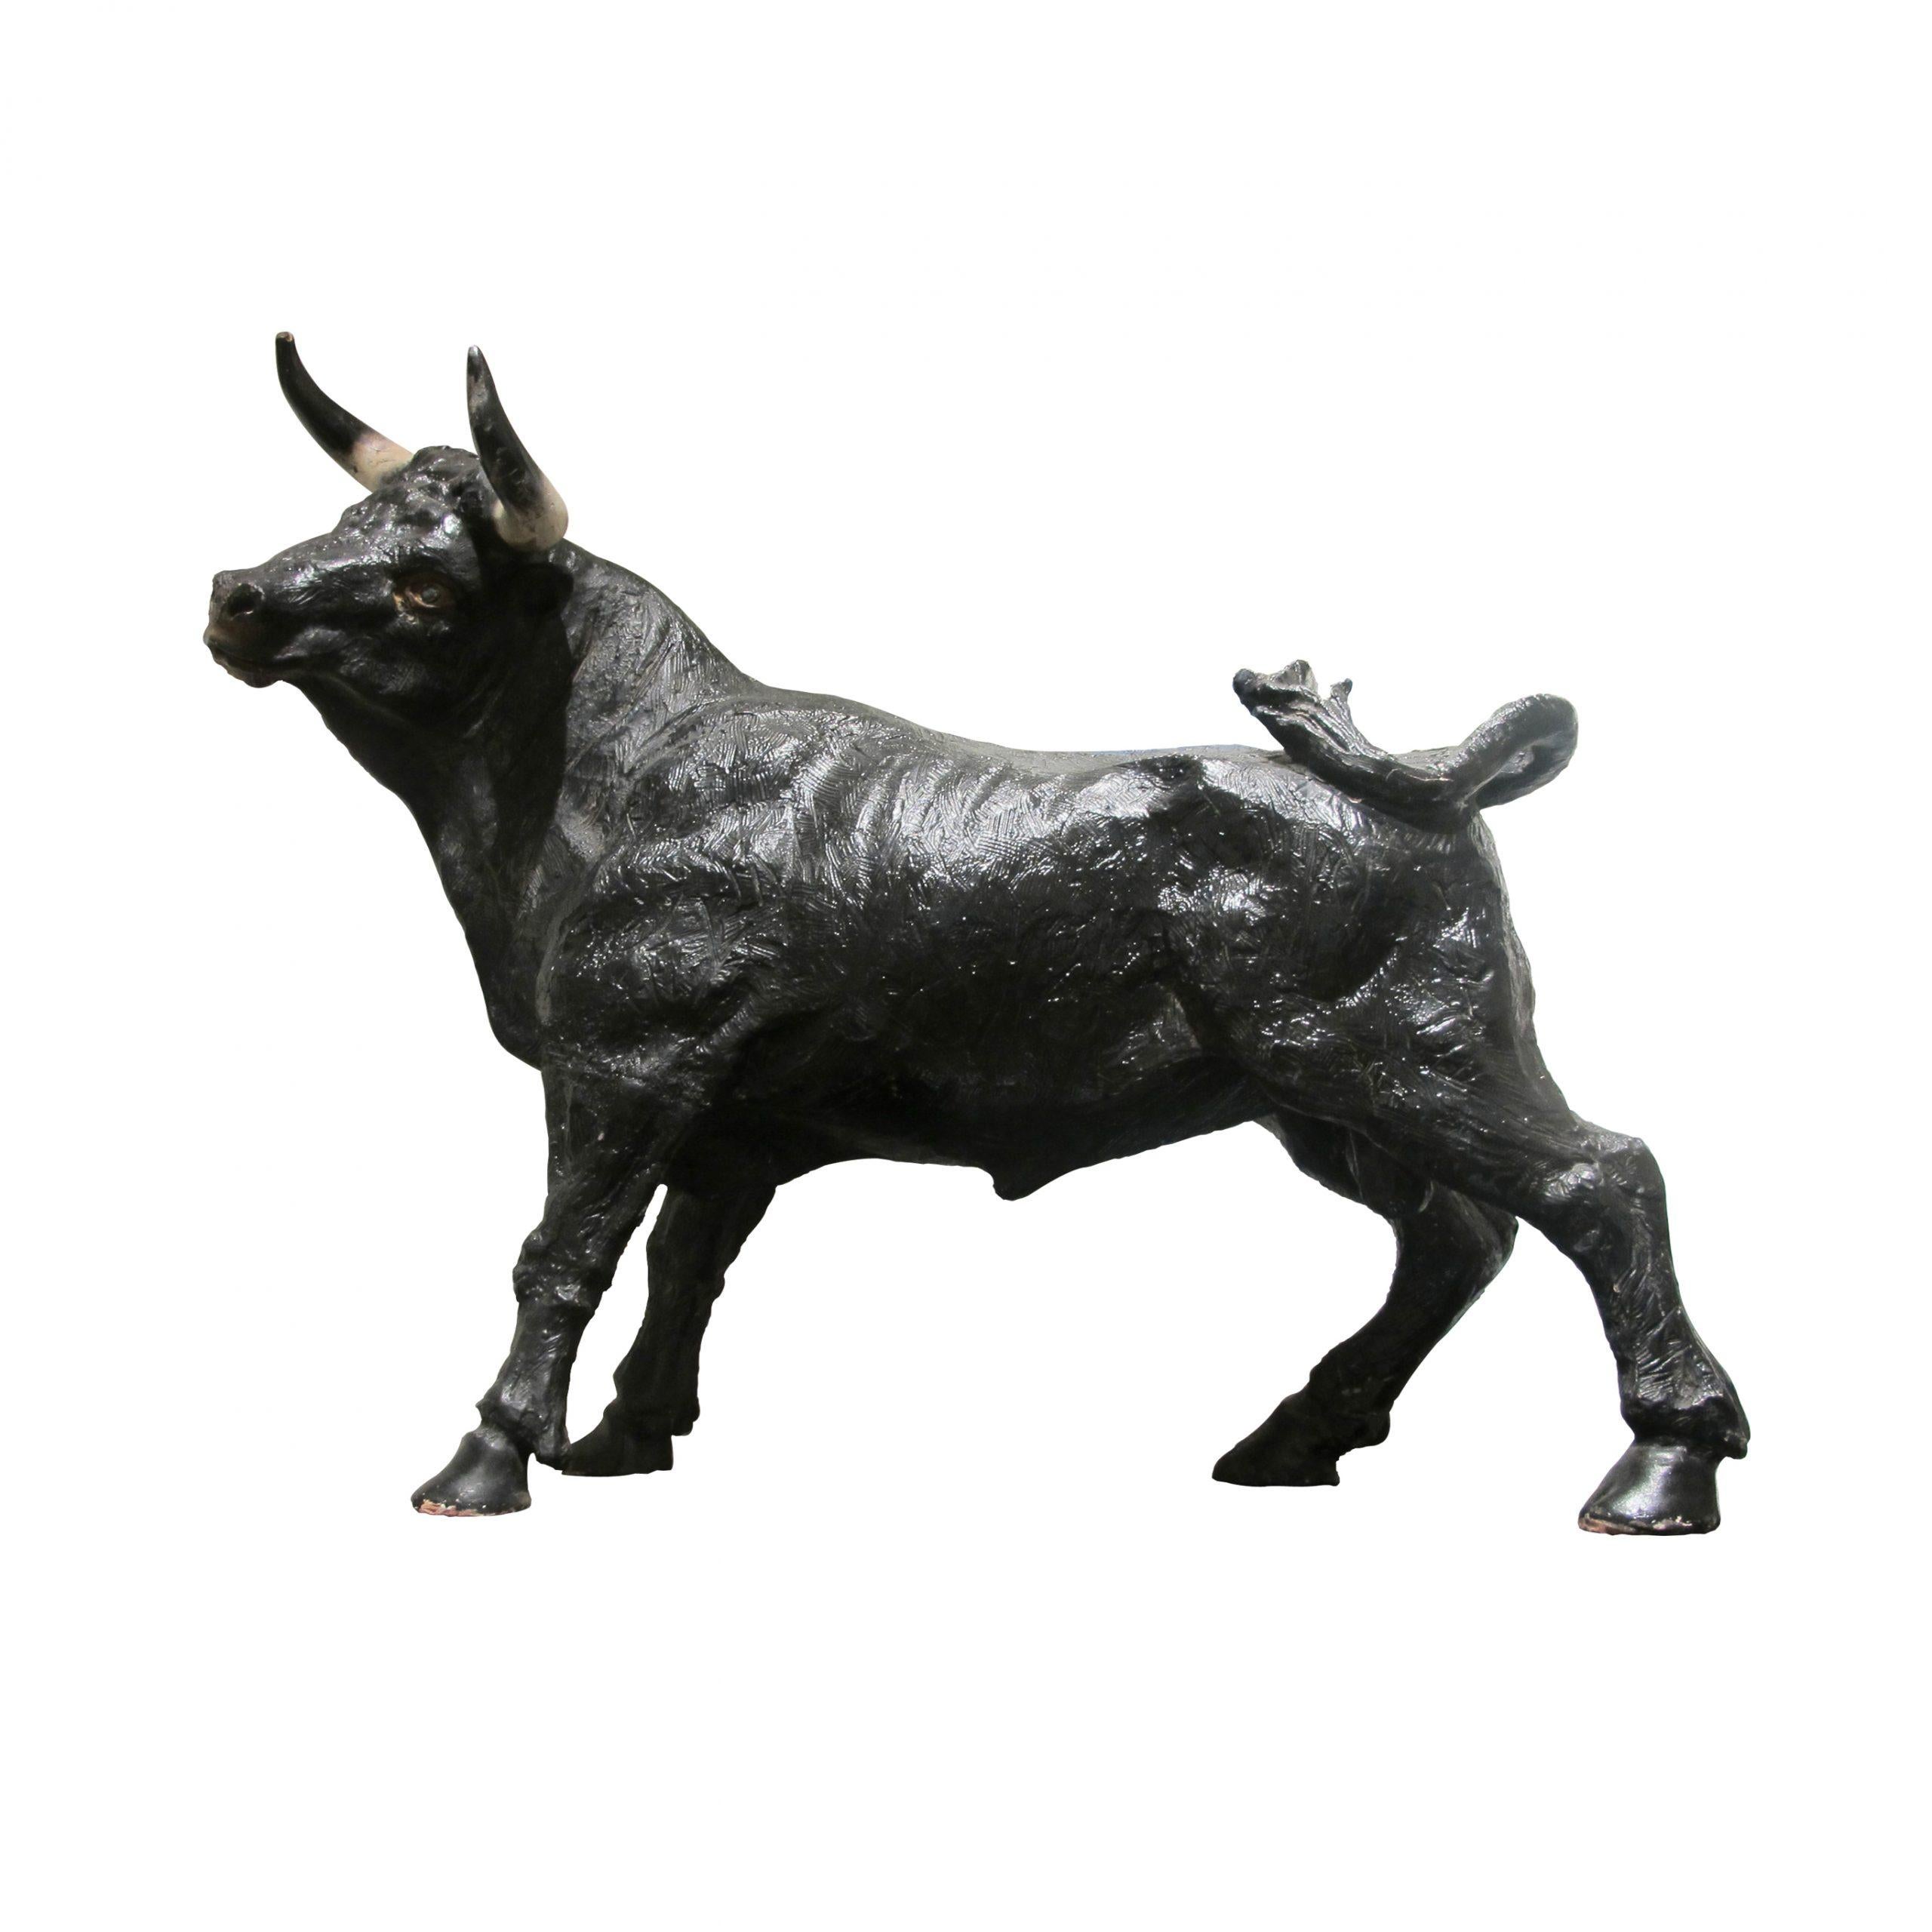 Der Stier ist in naturgetreuen Proportionen dargestellt, seine muskulöse Form strahlt eine dynamische Energie und Kraft aus. Die Skulptur strahlt eine spürbare Vitalität und Bewegung aus. 

Größe: H87 cm x B100 cm x T35 cm
